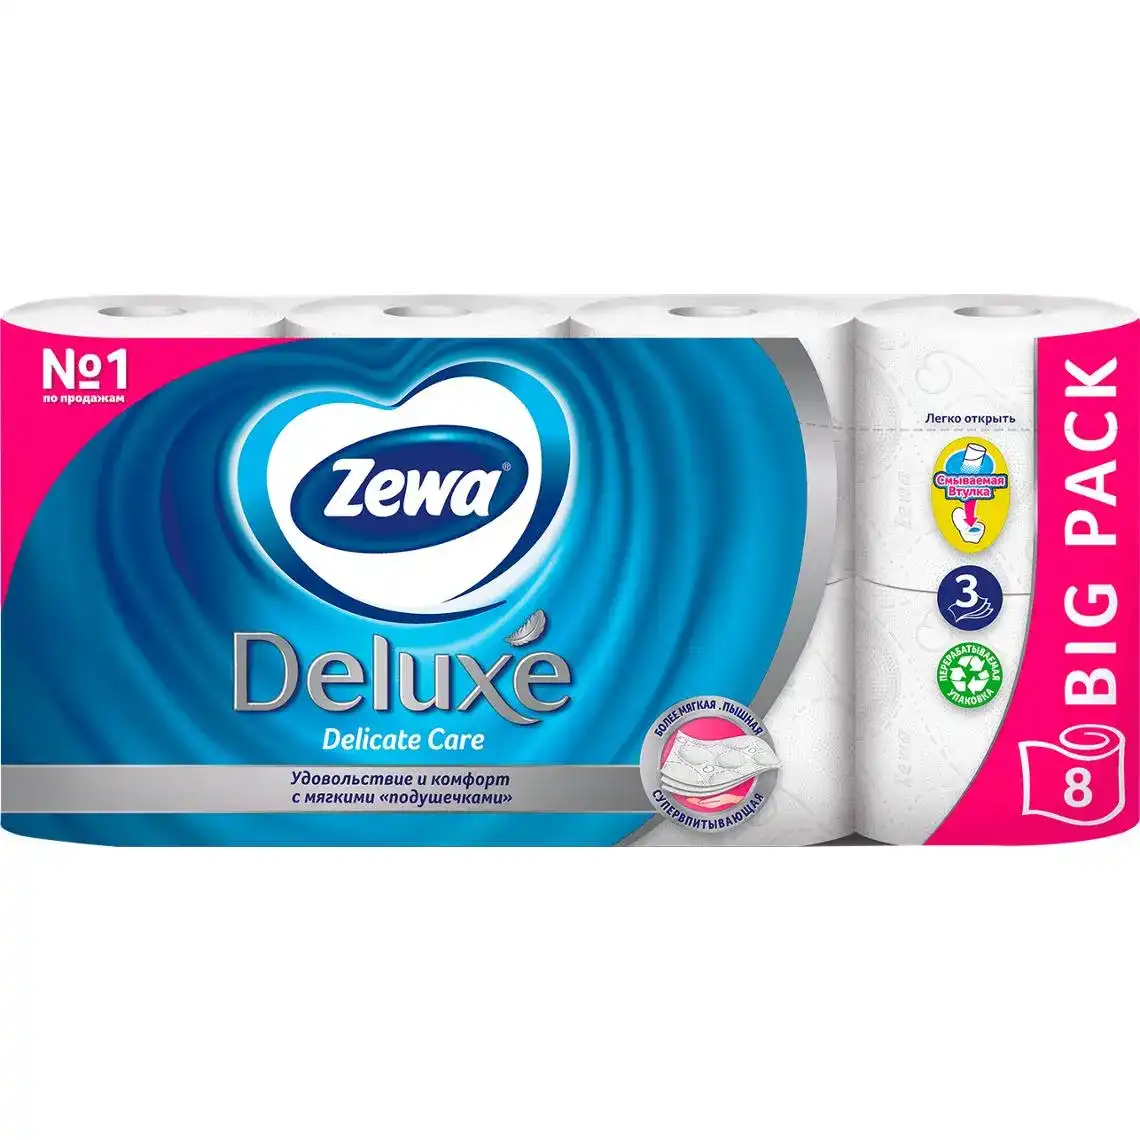 Бумага туалетная Zewa Deluxe Delicate Care 3-х слойная белая 8 шт